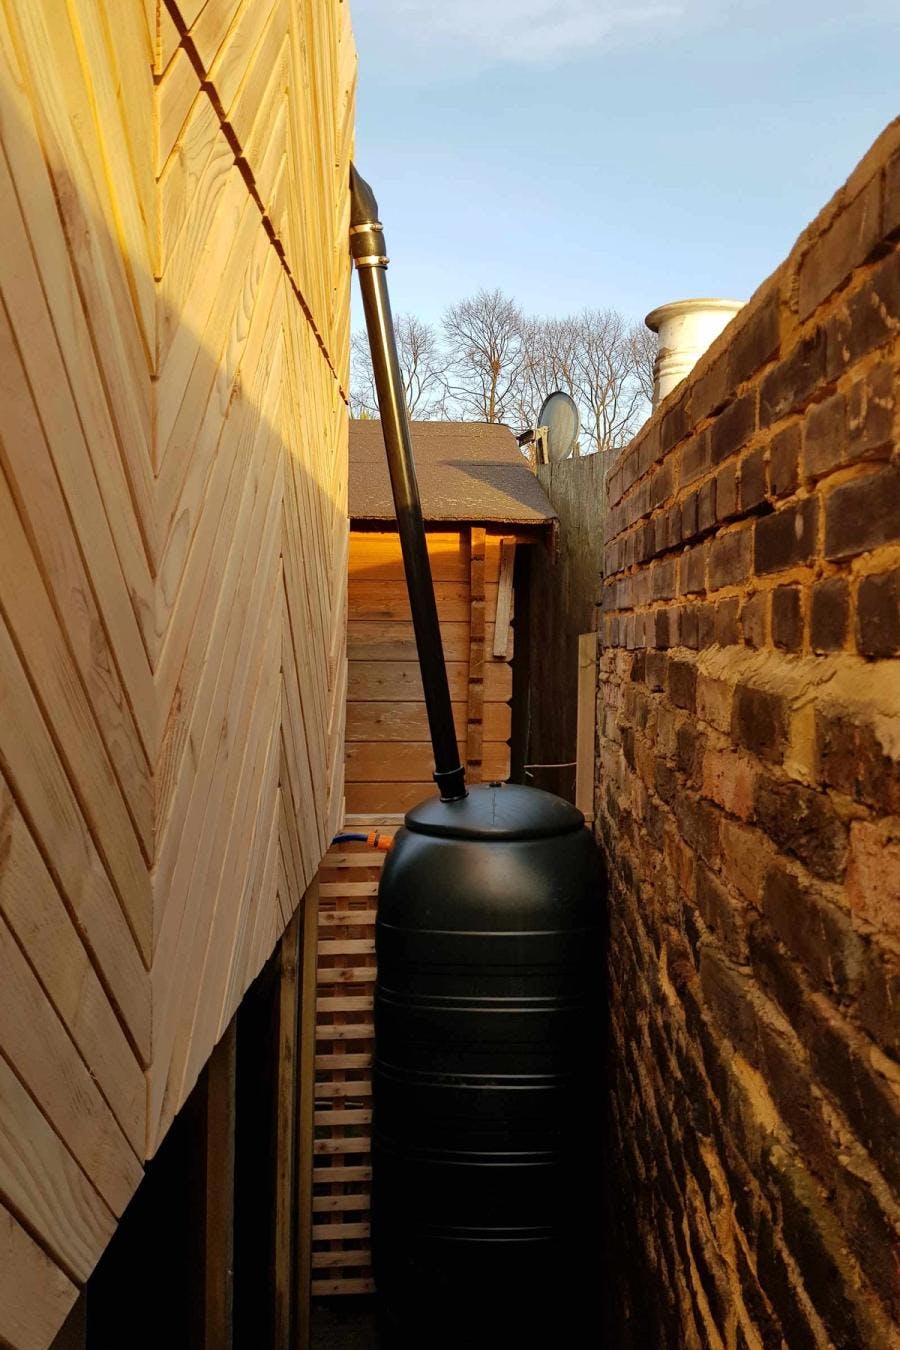 Rain water tank between the pod and brick wall